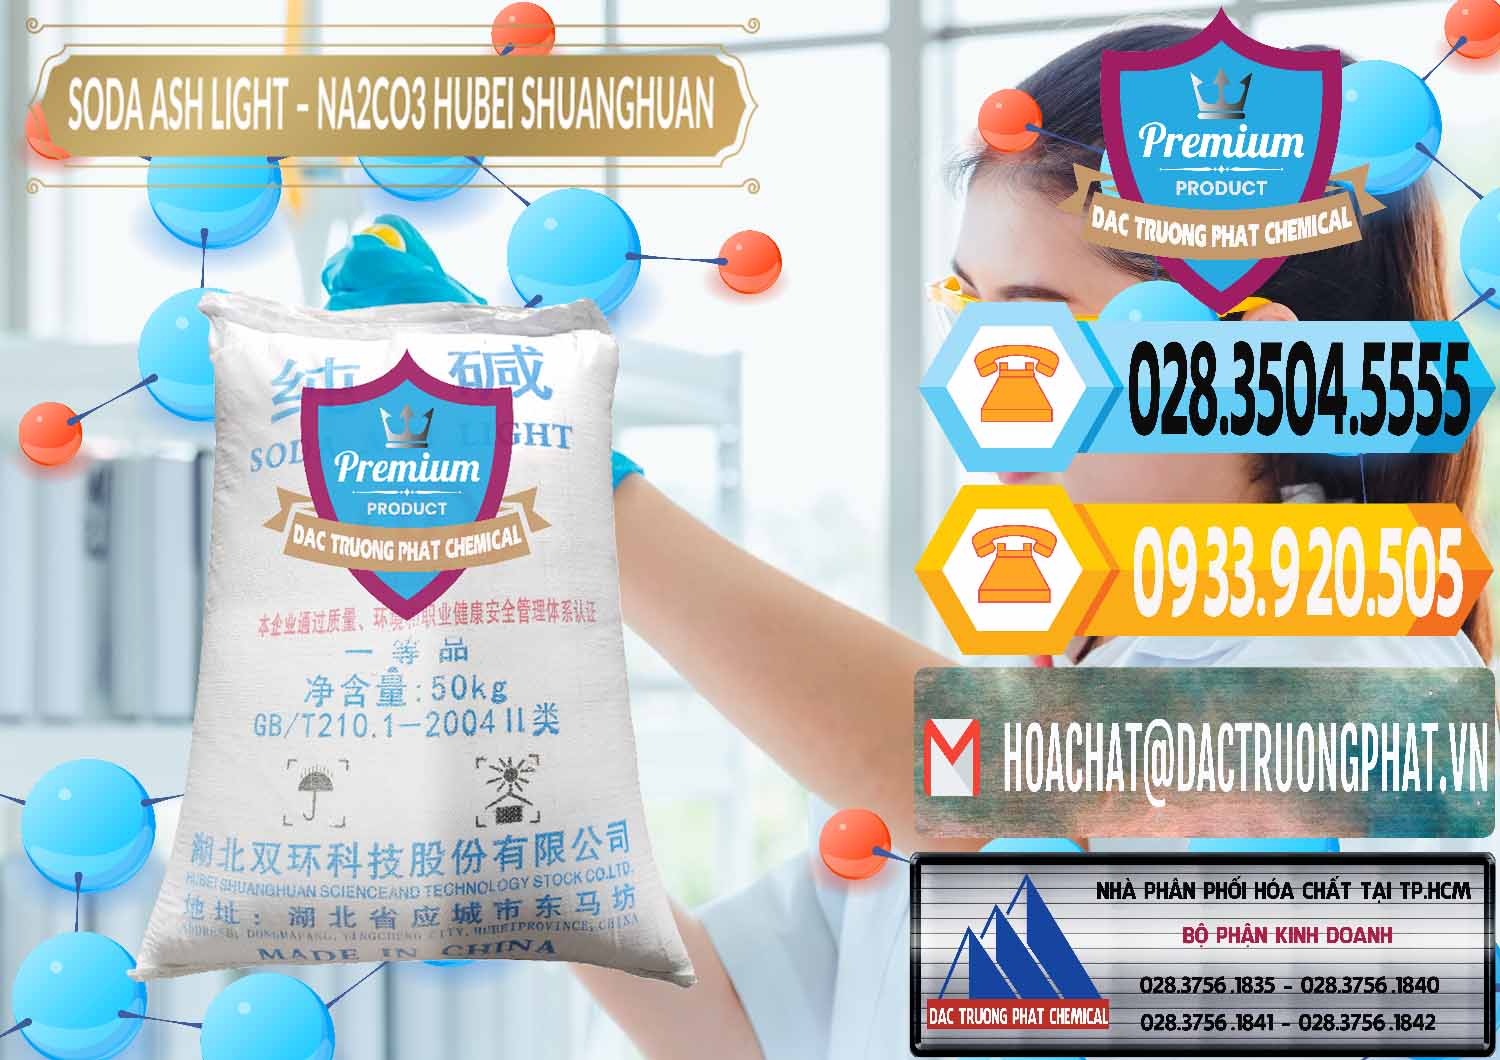 Chuyên cung cấp & bán Soda Ash Light - NA2CO3 2 Vòng Tròn Hubei Shuanghuan Trung Quốc China - 0130 - Nơi chuyên nhập khẩu và cung cấp hóa chất tại TP.HCM - hoachattayrua.net